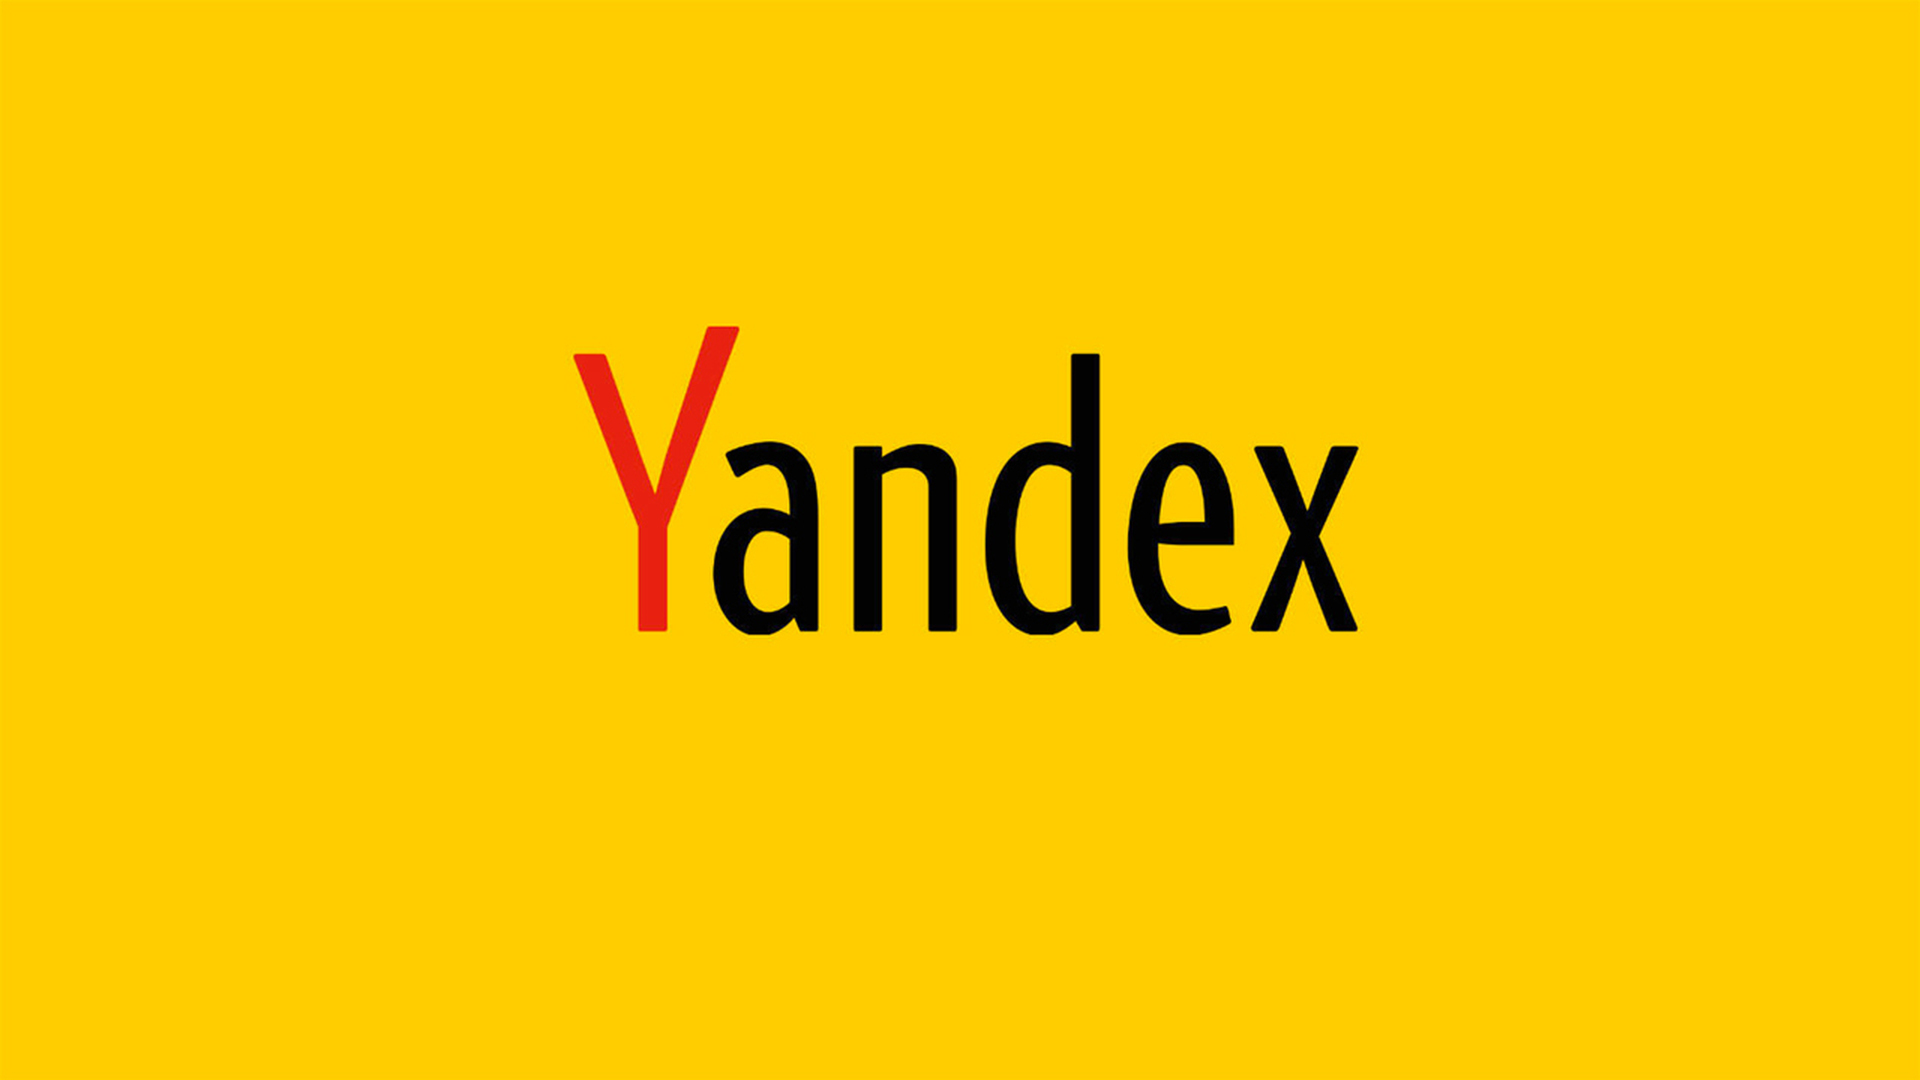 «Яндекс» с марта откроет офис в Турции для развития сервисов на местном рынке